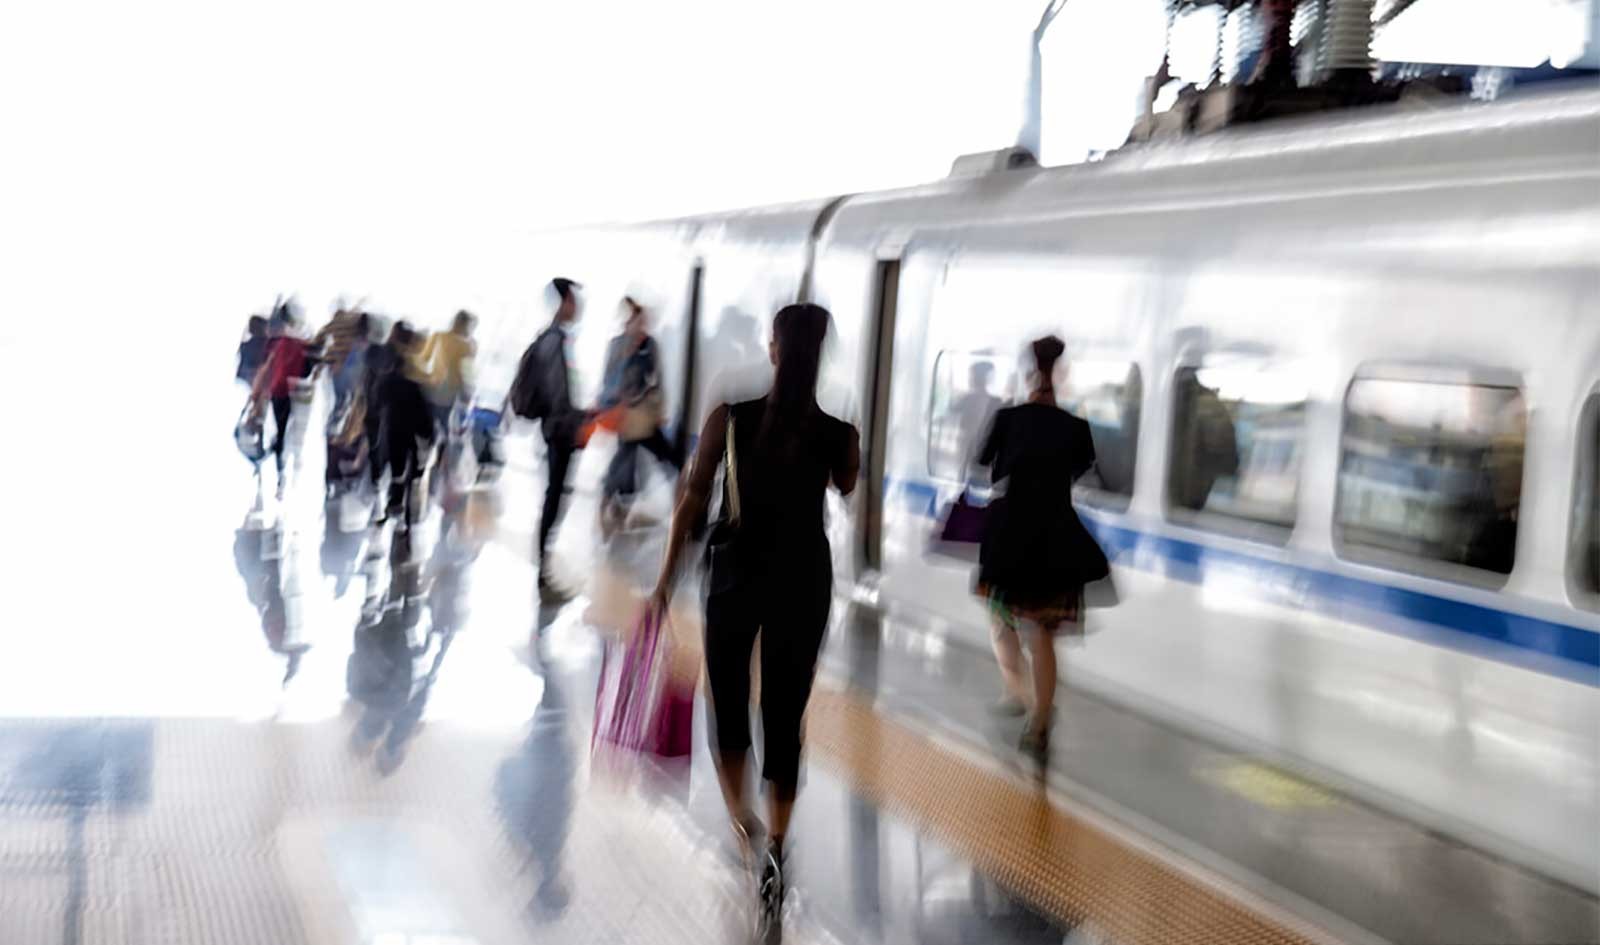 Blurred image of riders boarding train, photo by Dalia Leven